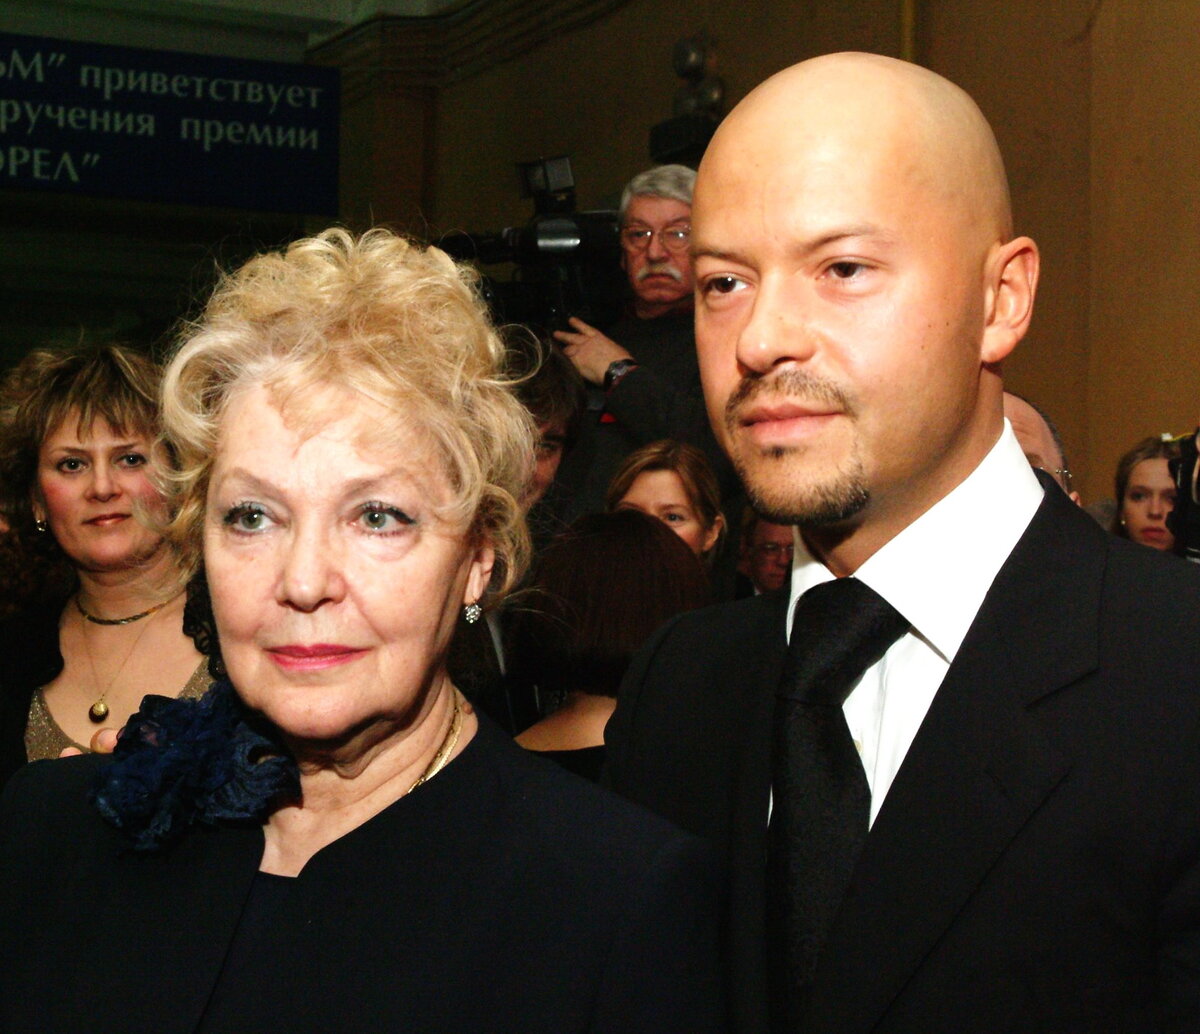 Федор бондарчук с первой женой фото